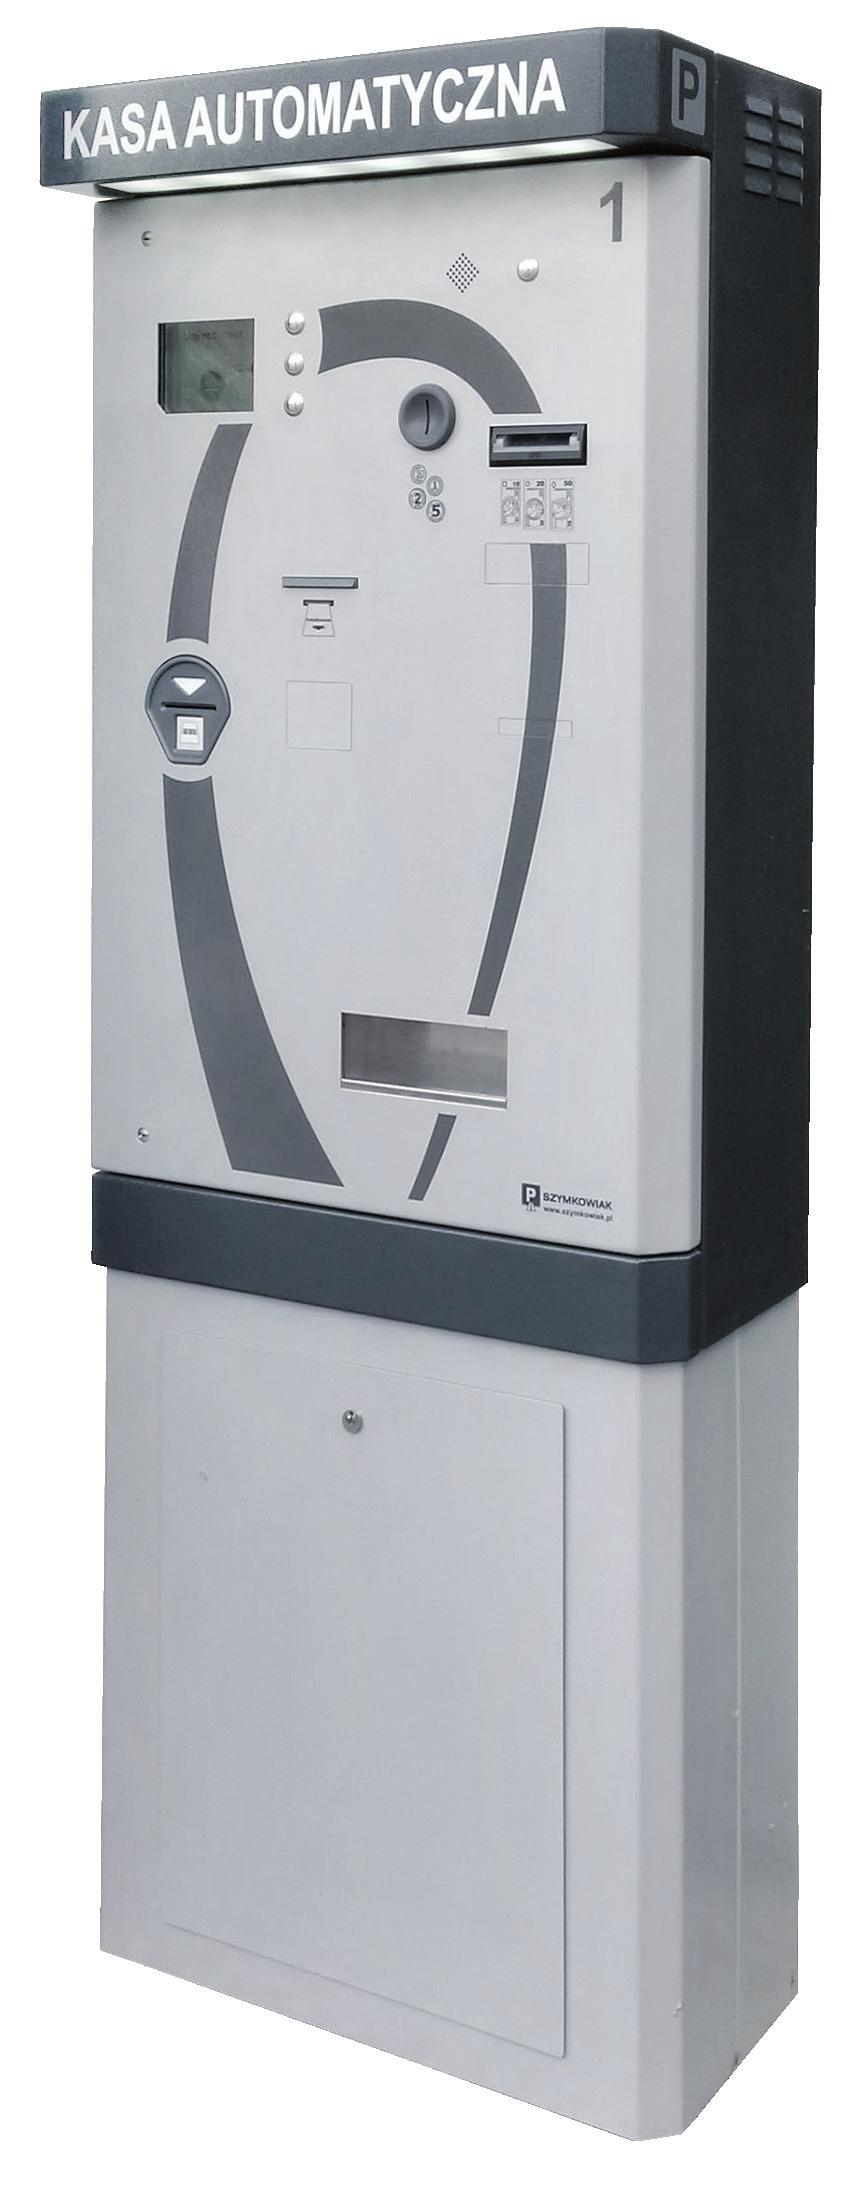 Automat rozliczeniowy KA-300 Automatyczna kasa płatnicza umożliwia klientom parkingu opłacenie należności za parkowanie bez udziału kasjera.